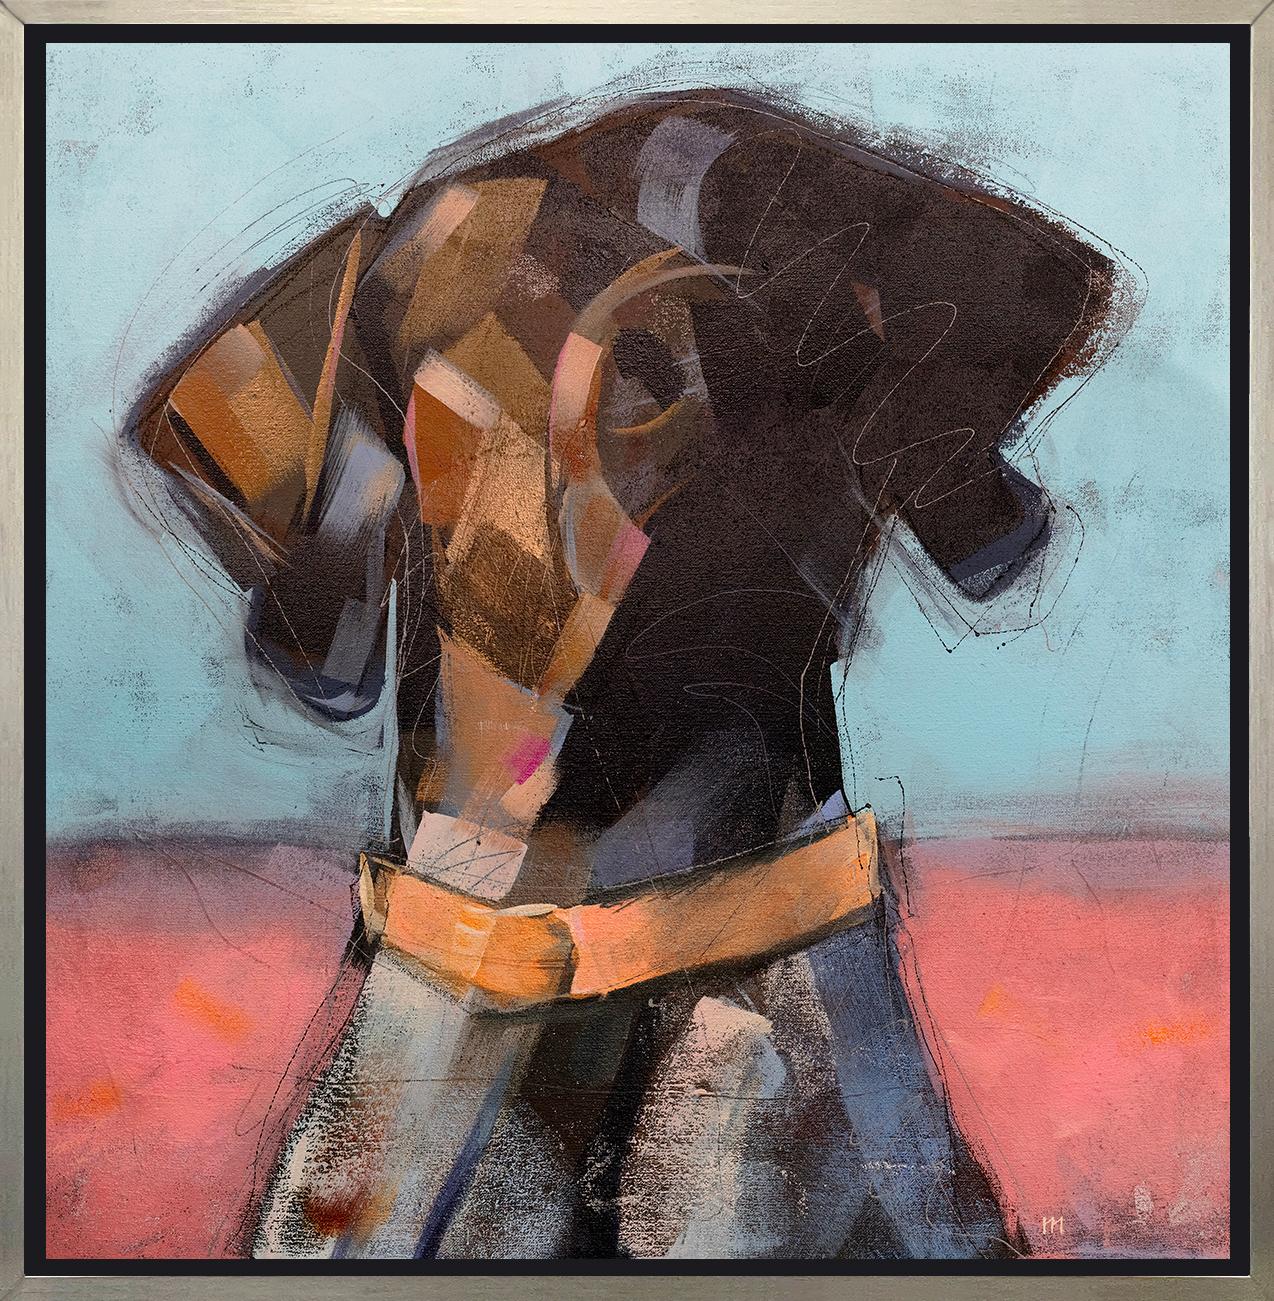 Dieser abstrahierte Druck eines Hundes des Künstlers Russell Miyaki zeigt eine lebhafte Farbpalette mit einem braunen Hund, der von den Schultern aufwärts ein leuchtend orangefarbenes Halsband vor einem hellen, halb roten und halb blauen Hintergrund